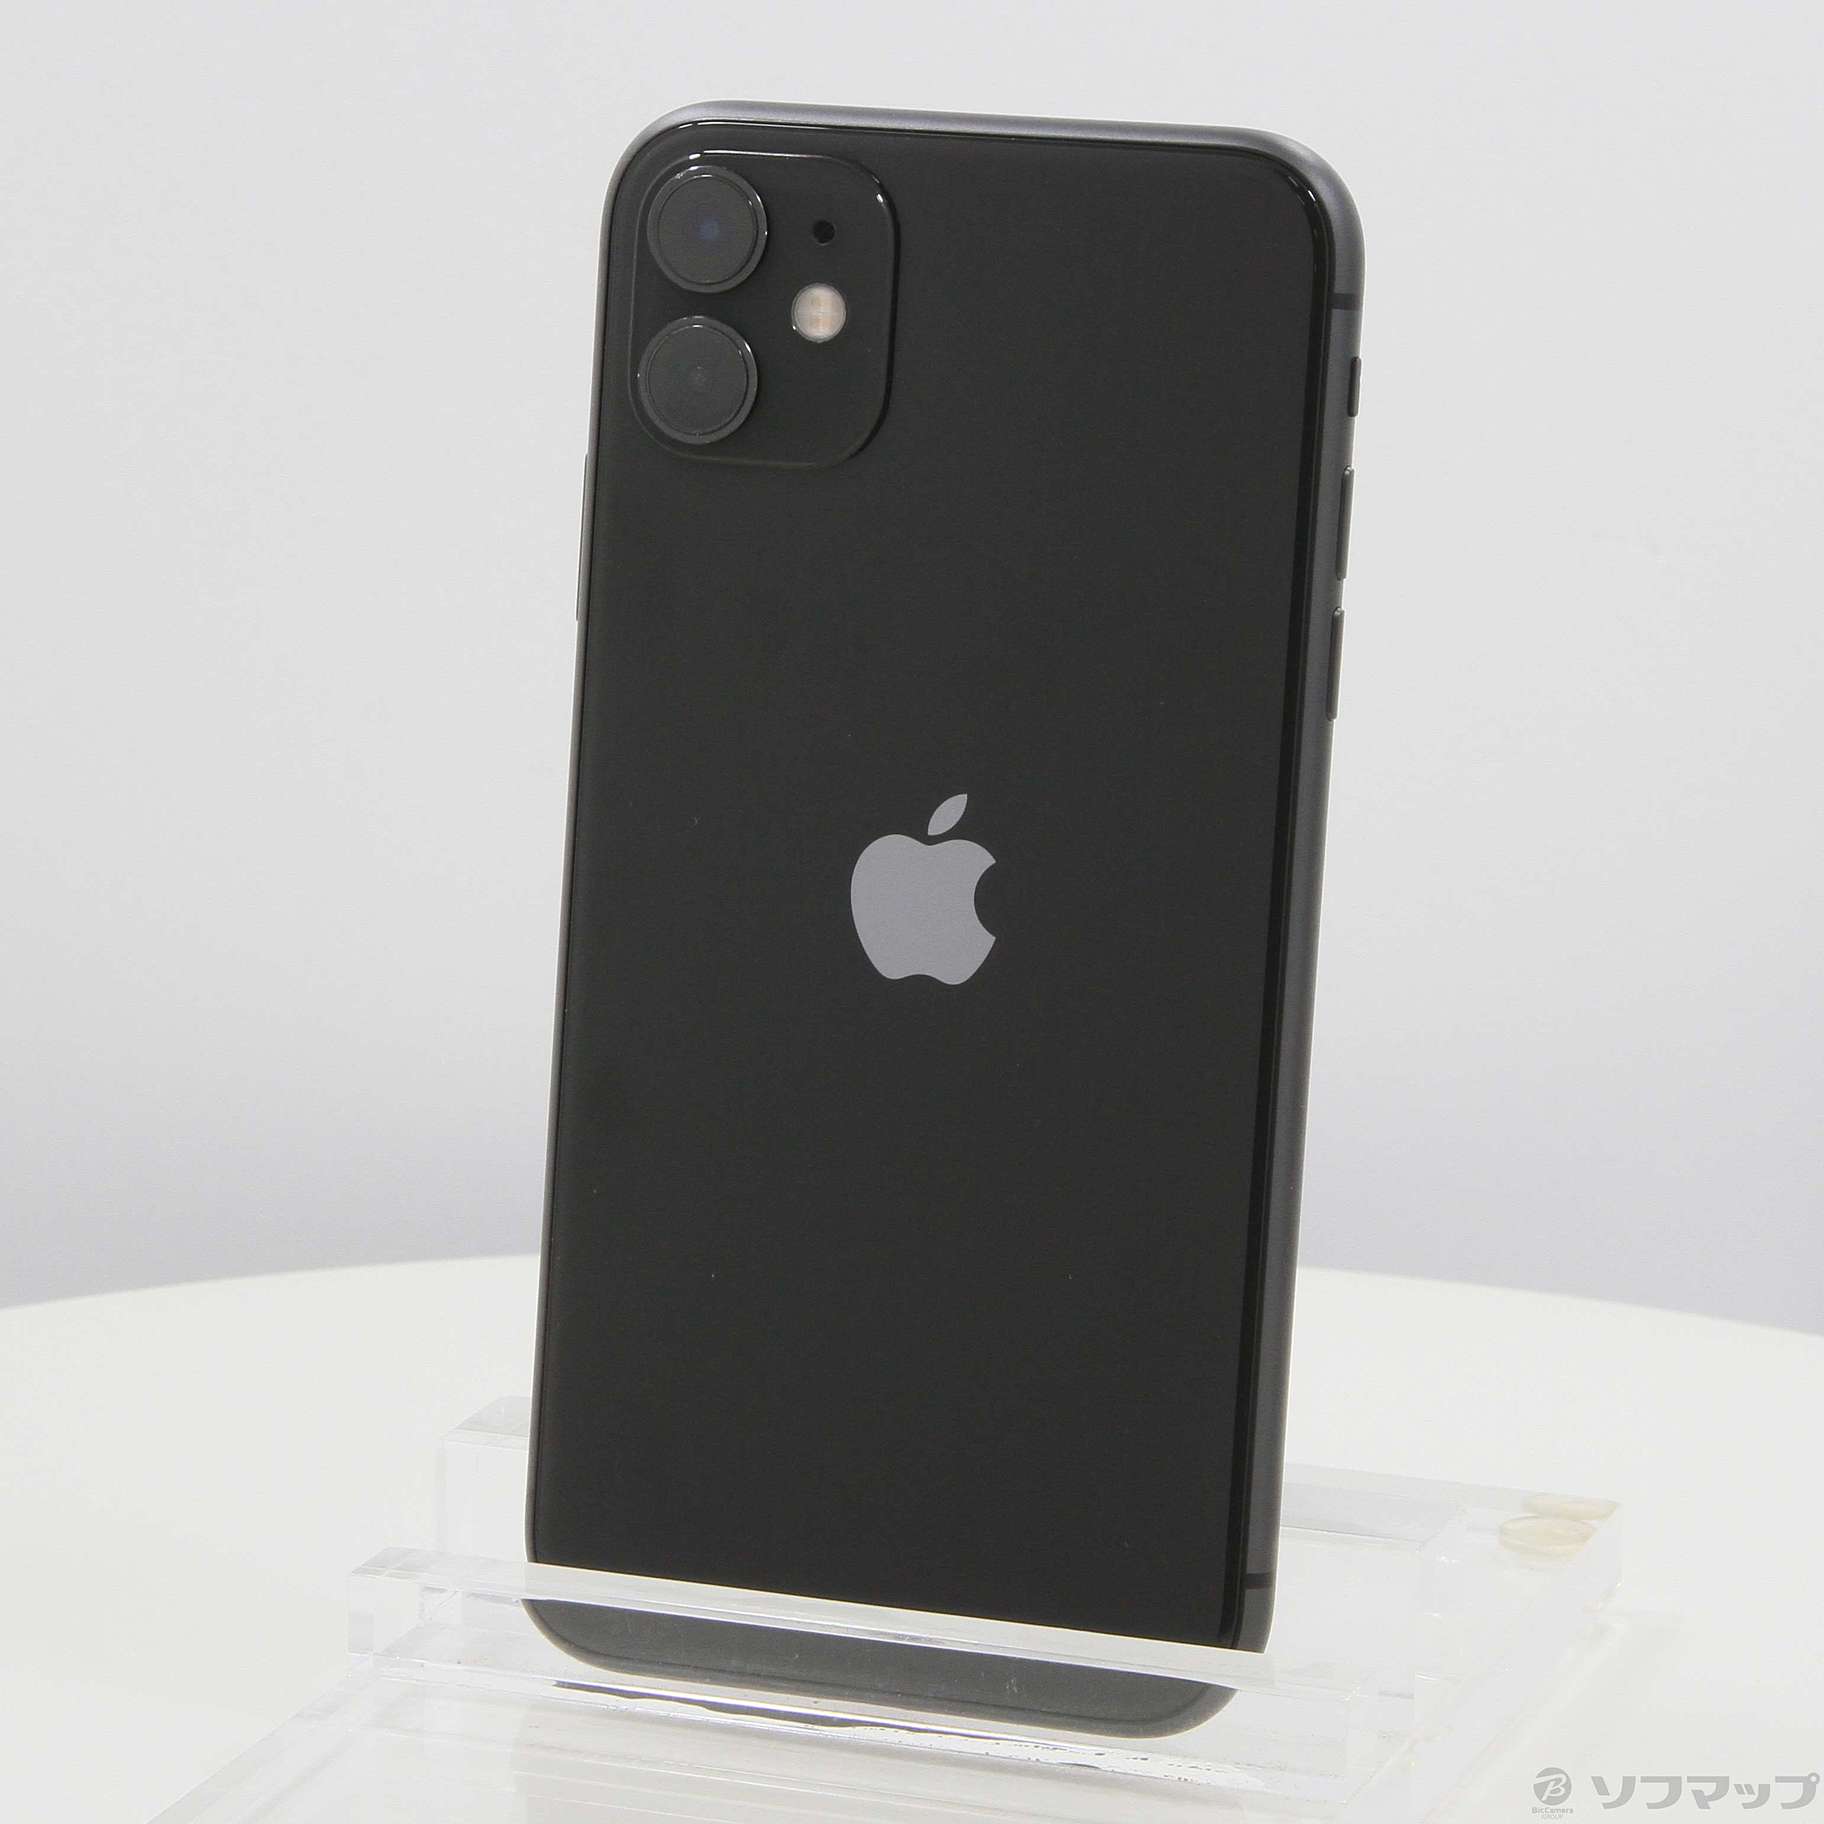 美品」 iPhone11 64GB ブラック(Black) simフリー - スマートフォン本体